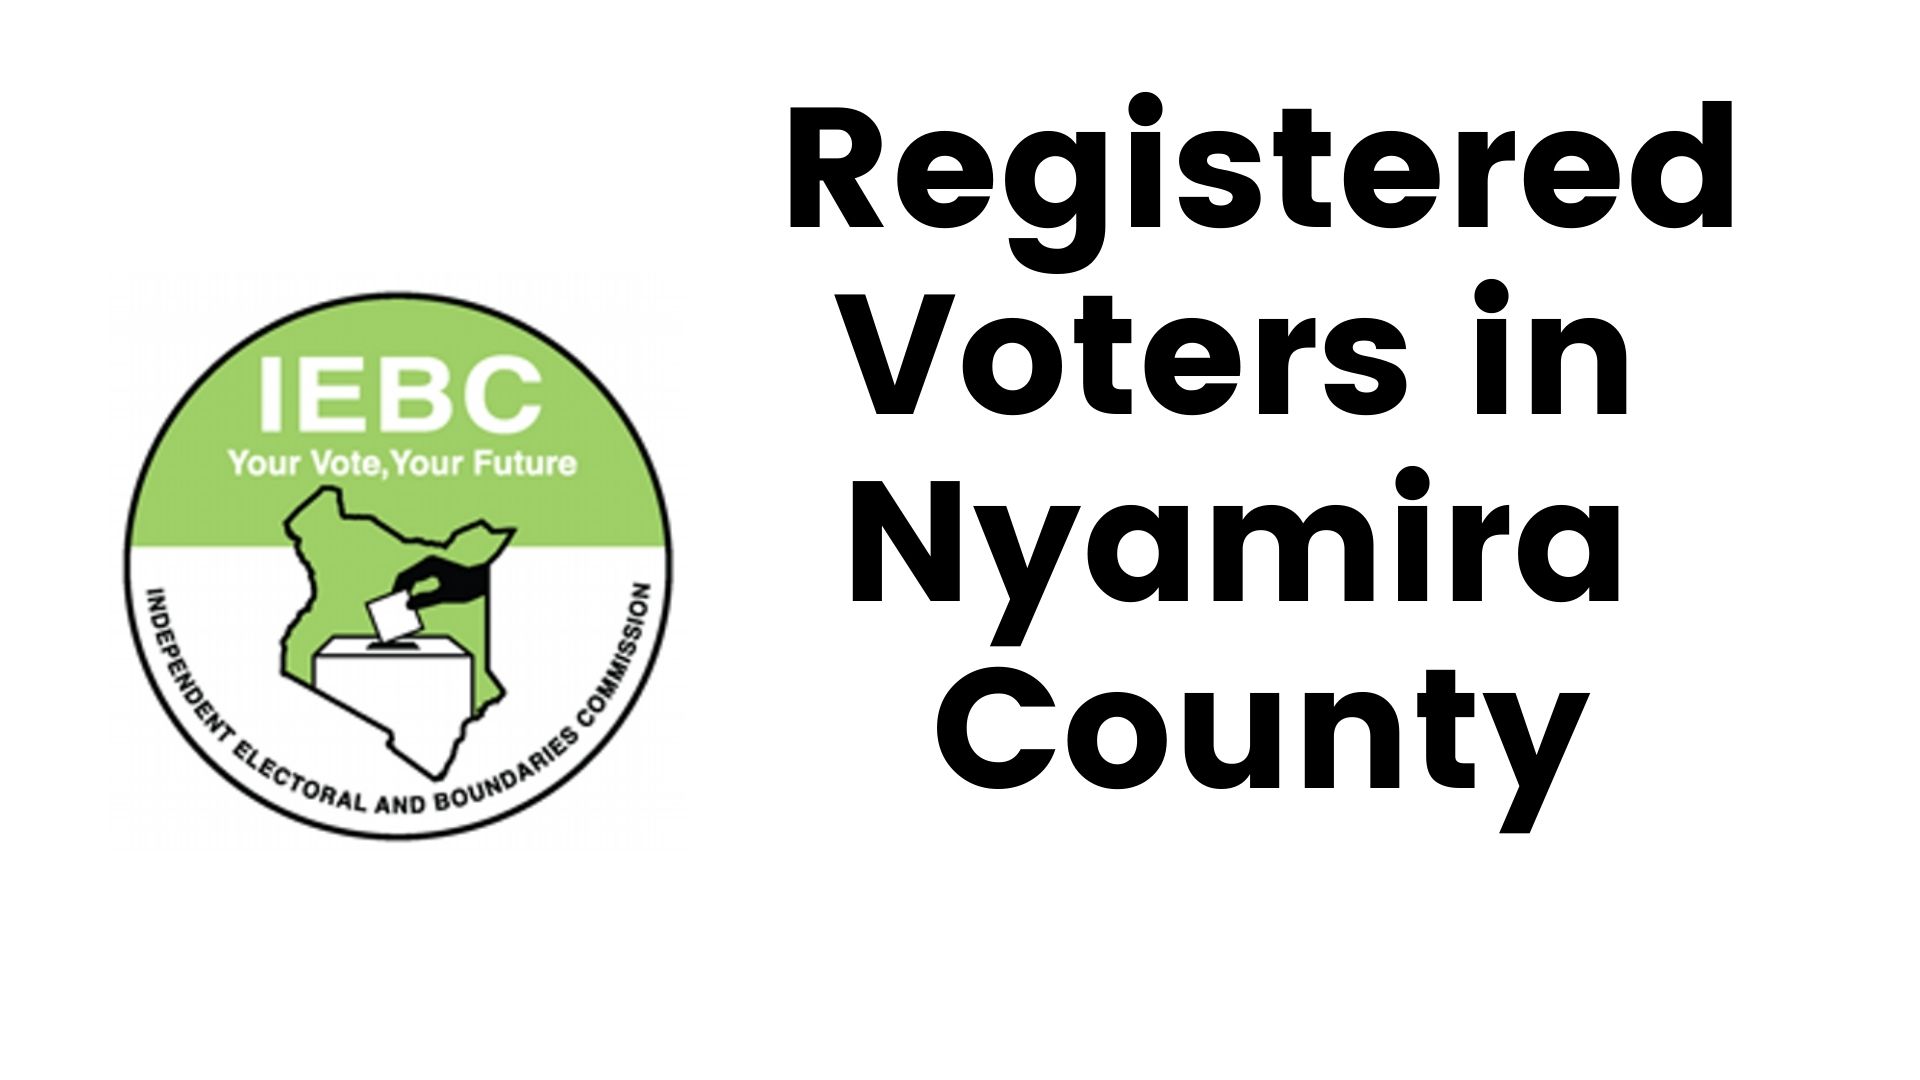 IEBC Nyamira County Registered Voters